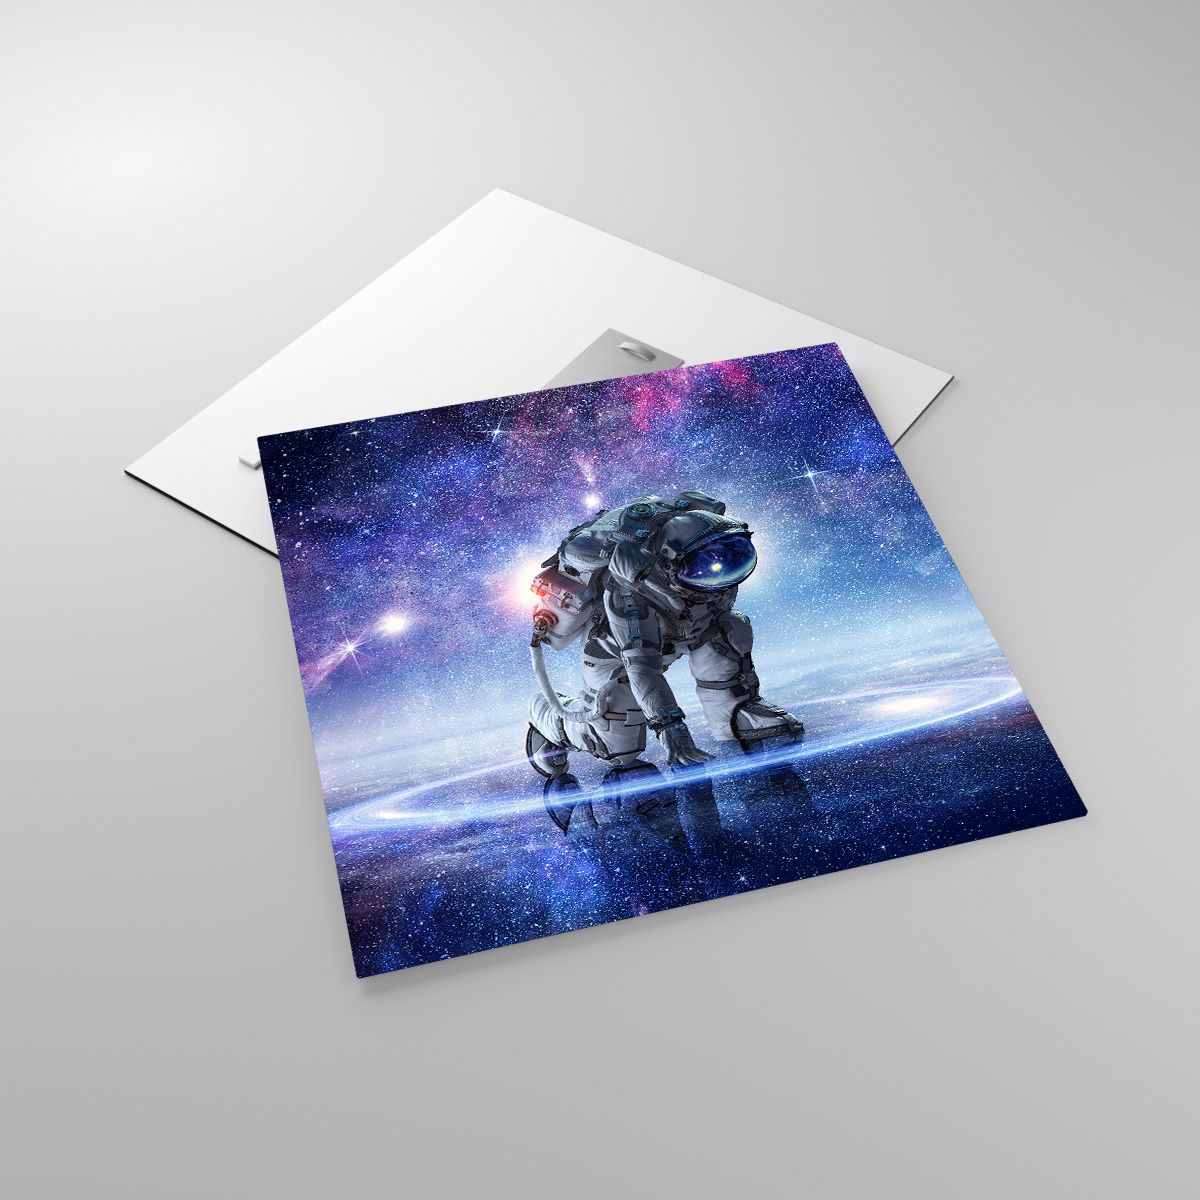 Glasbild Kosmonaut, Glasbild Kosmos, Glasbild Astronaut, Glasbild Galaxis, Glasbild Universum